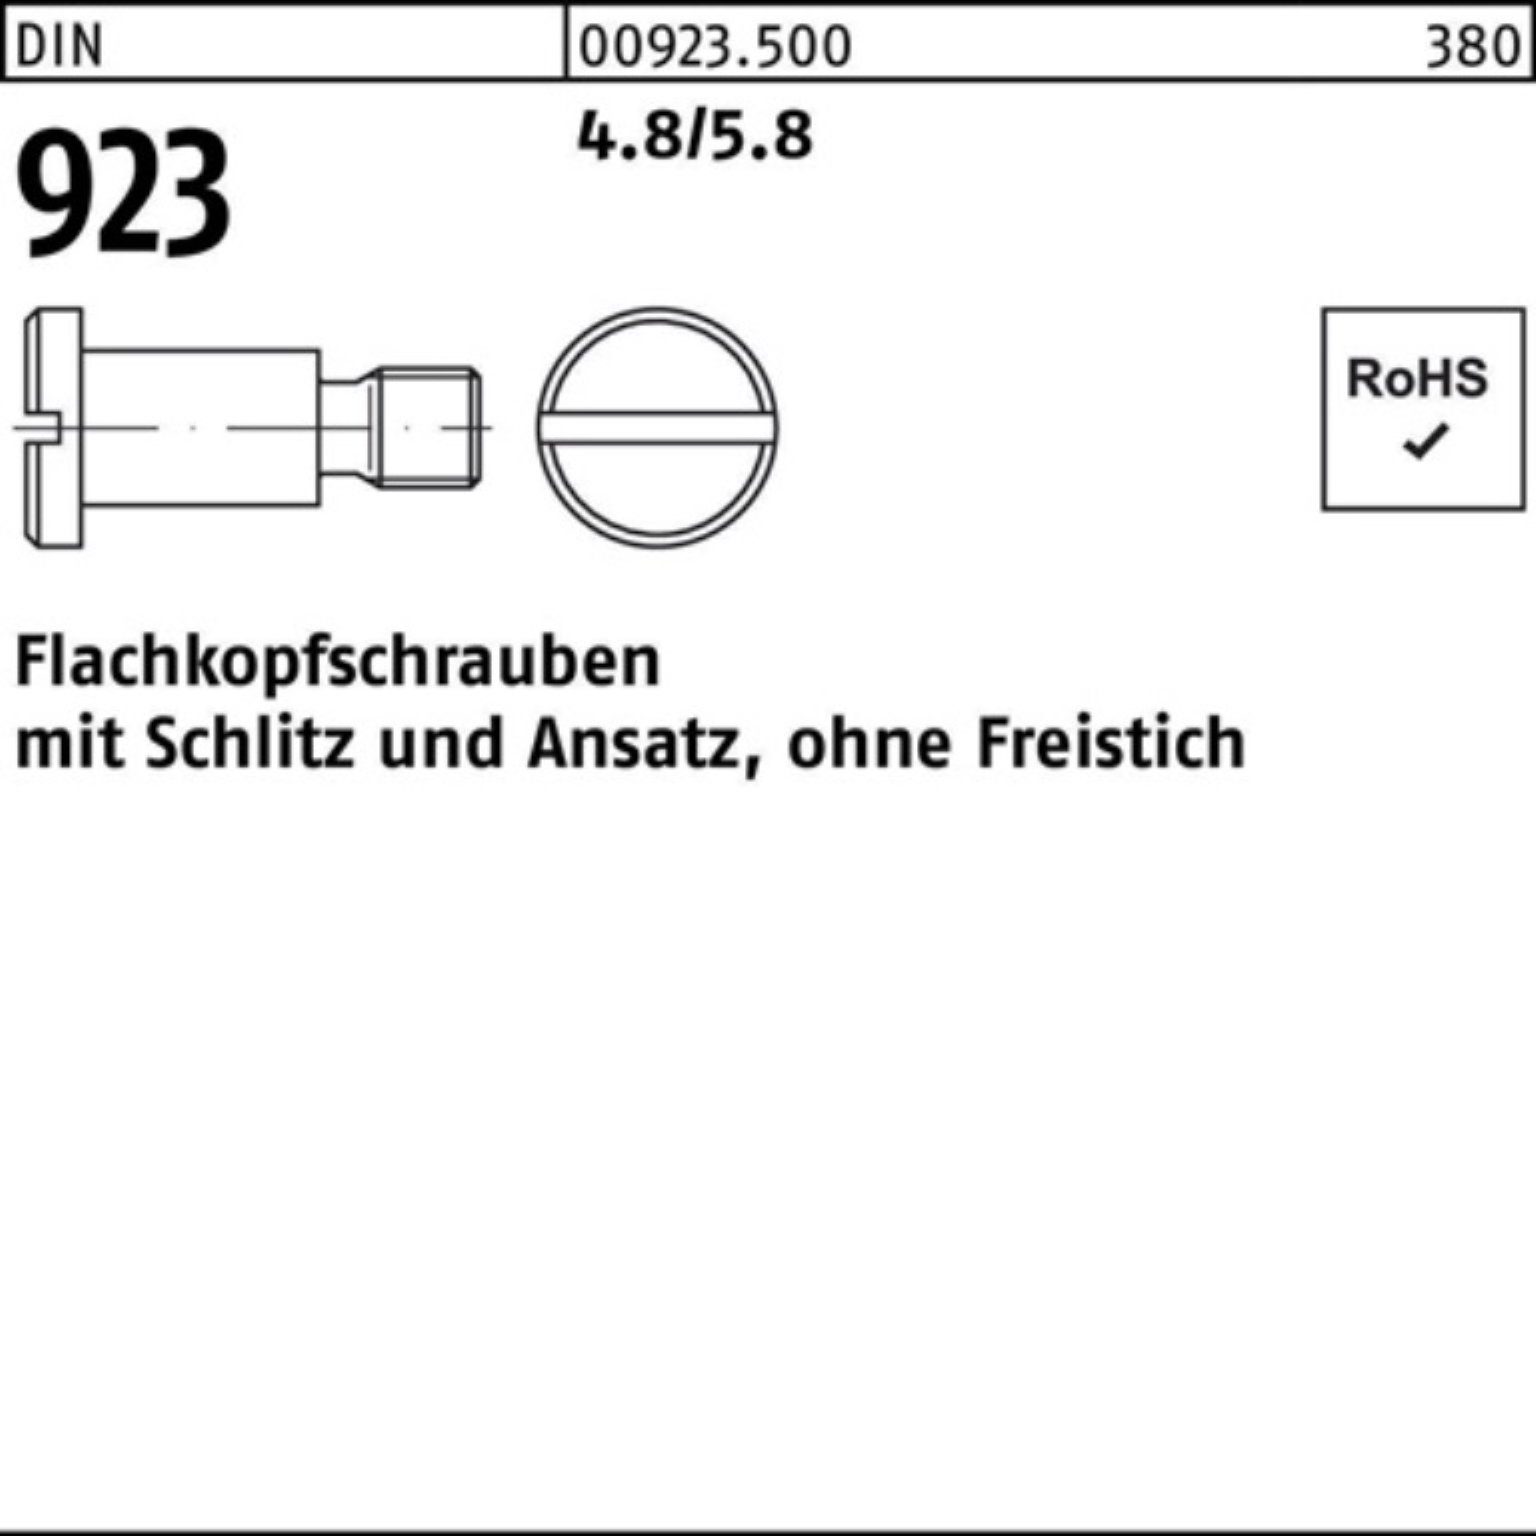 Reyher Schraube 100er Pack Flachkopfschraube DIN 923 Schlitz/Ansatz M10x16x13,5 4.8/5.